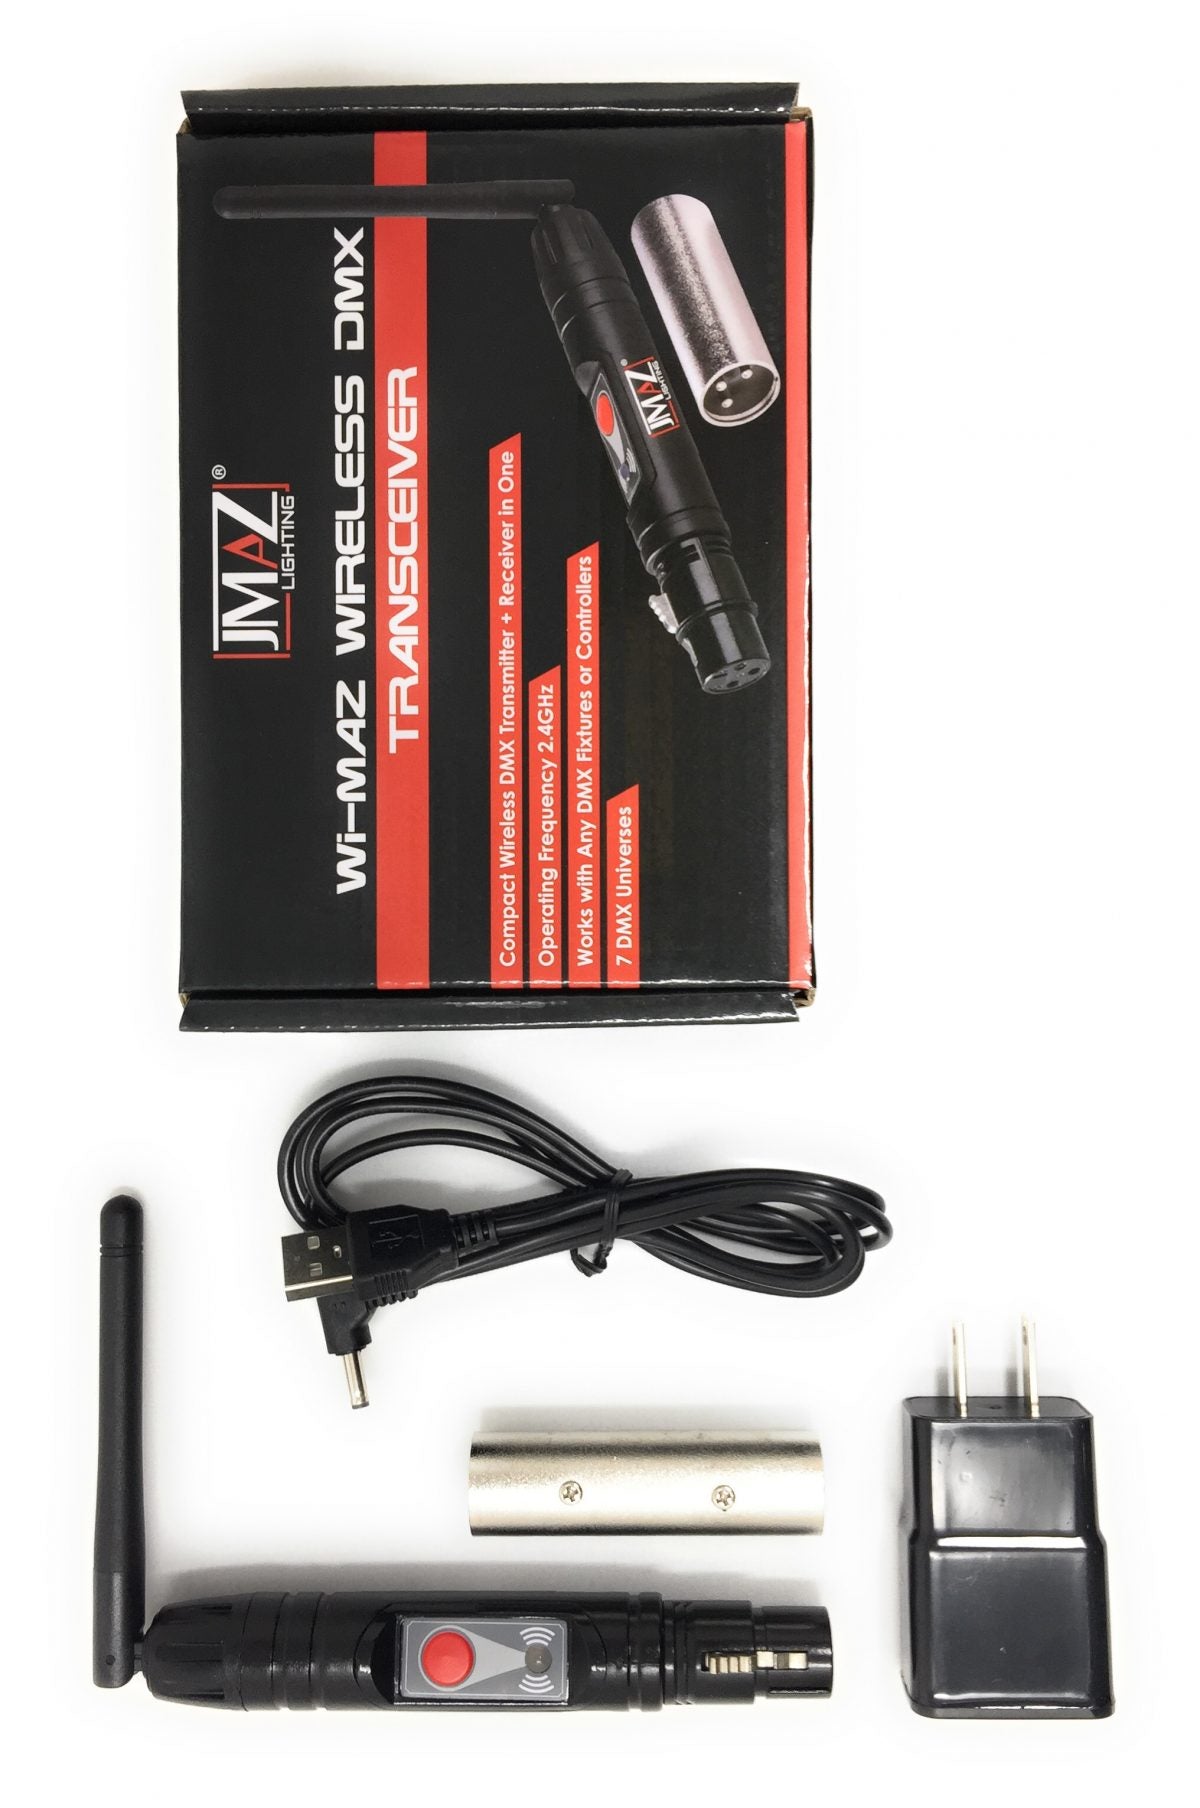 JMAZ Wi-MAZ Wireless DMX Transceiver